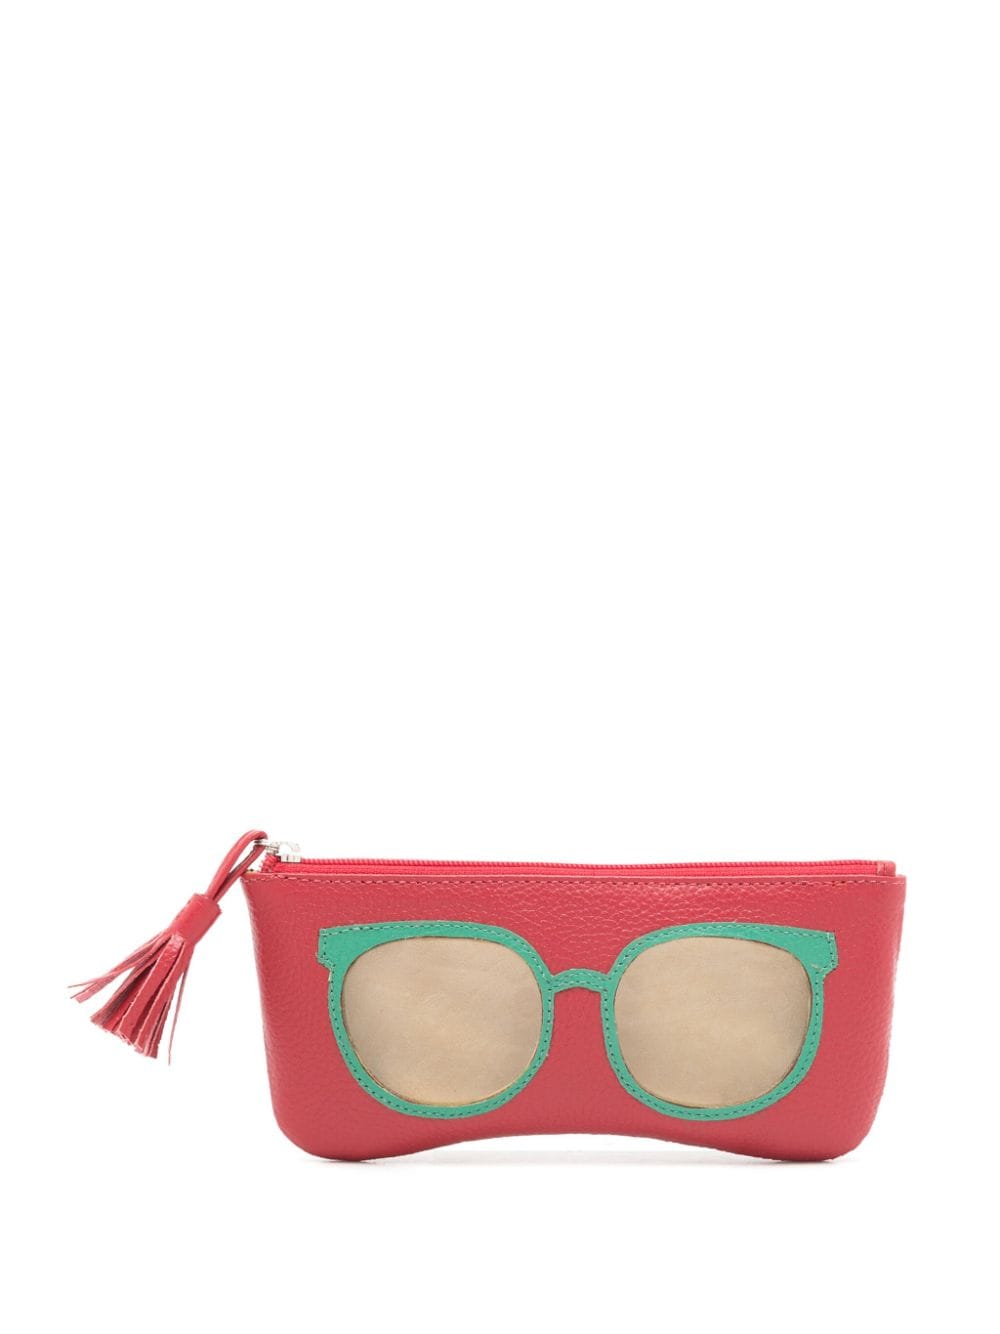 Sarah Chofakian sunglasses-print leather case - Red von Sarah Chofakian